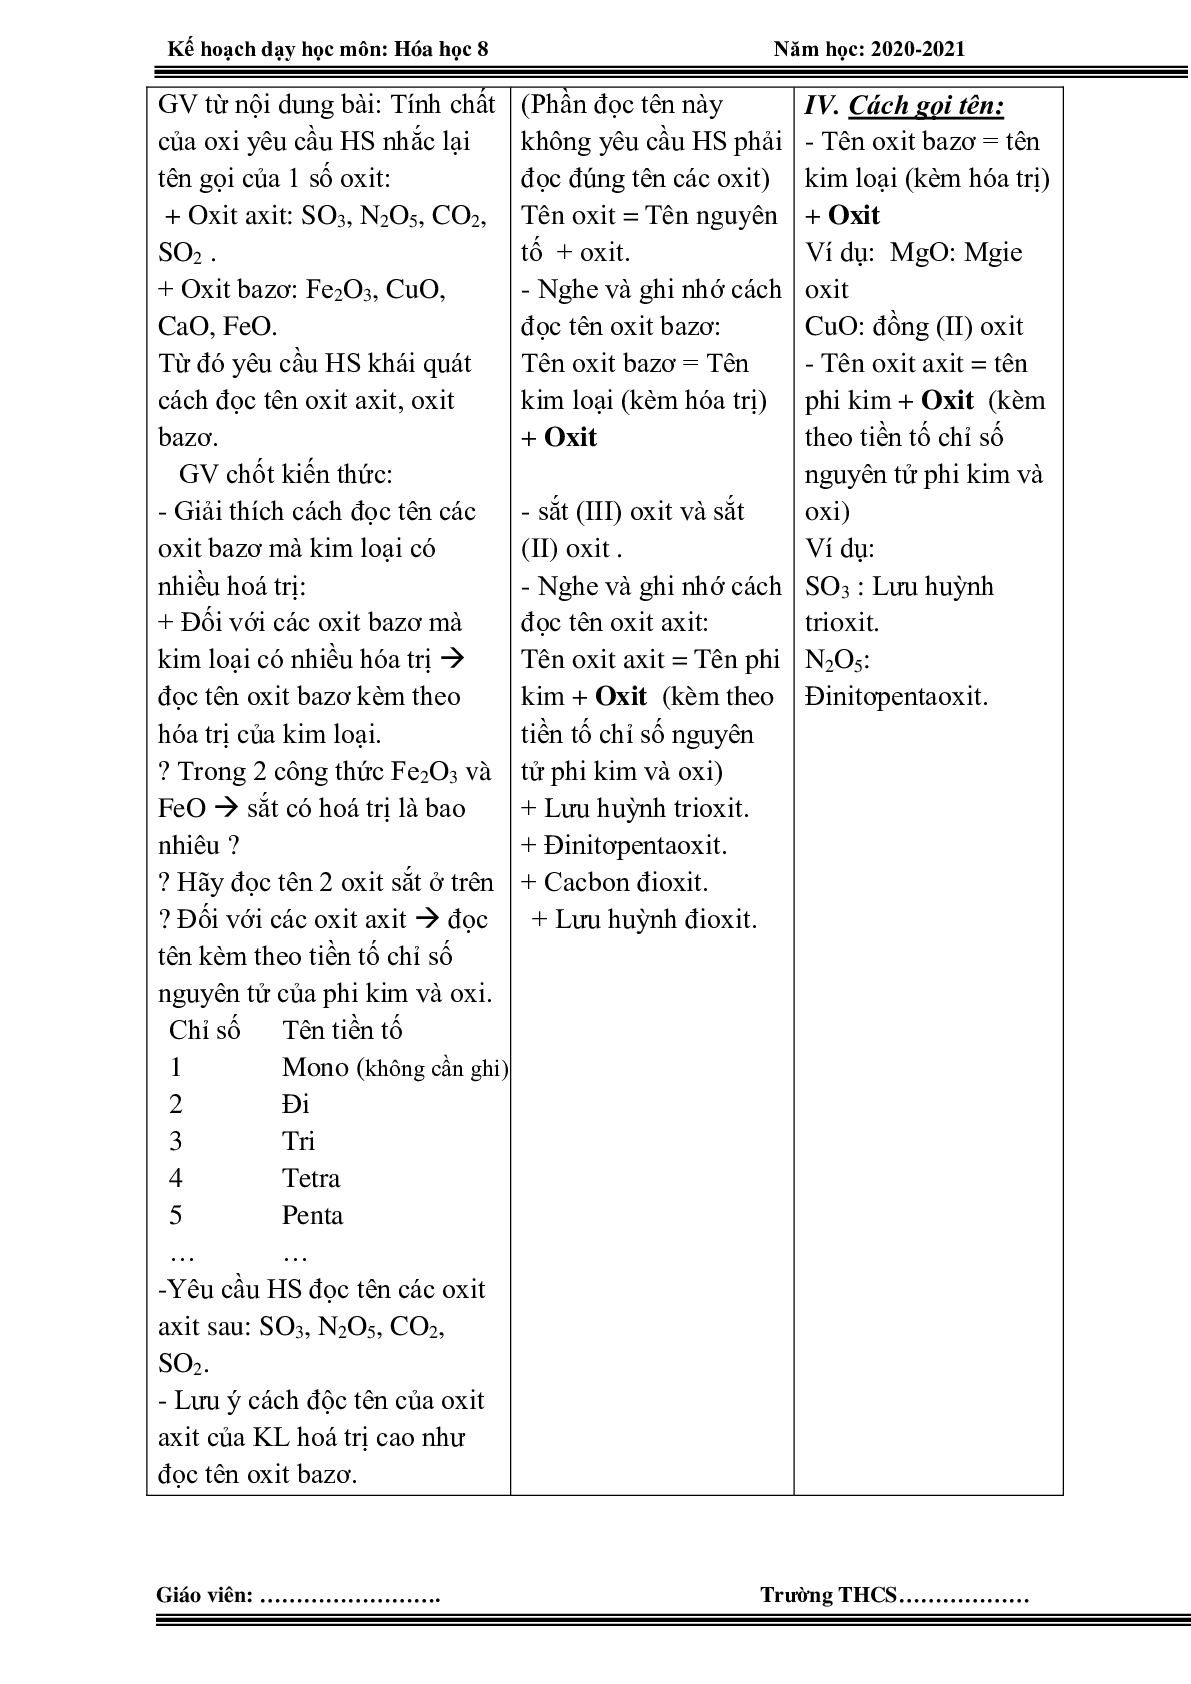 Giáo án hóa học 8 HK 2 theo công văn 5512 mới nhất (trang 7)